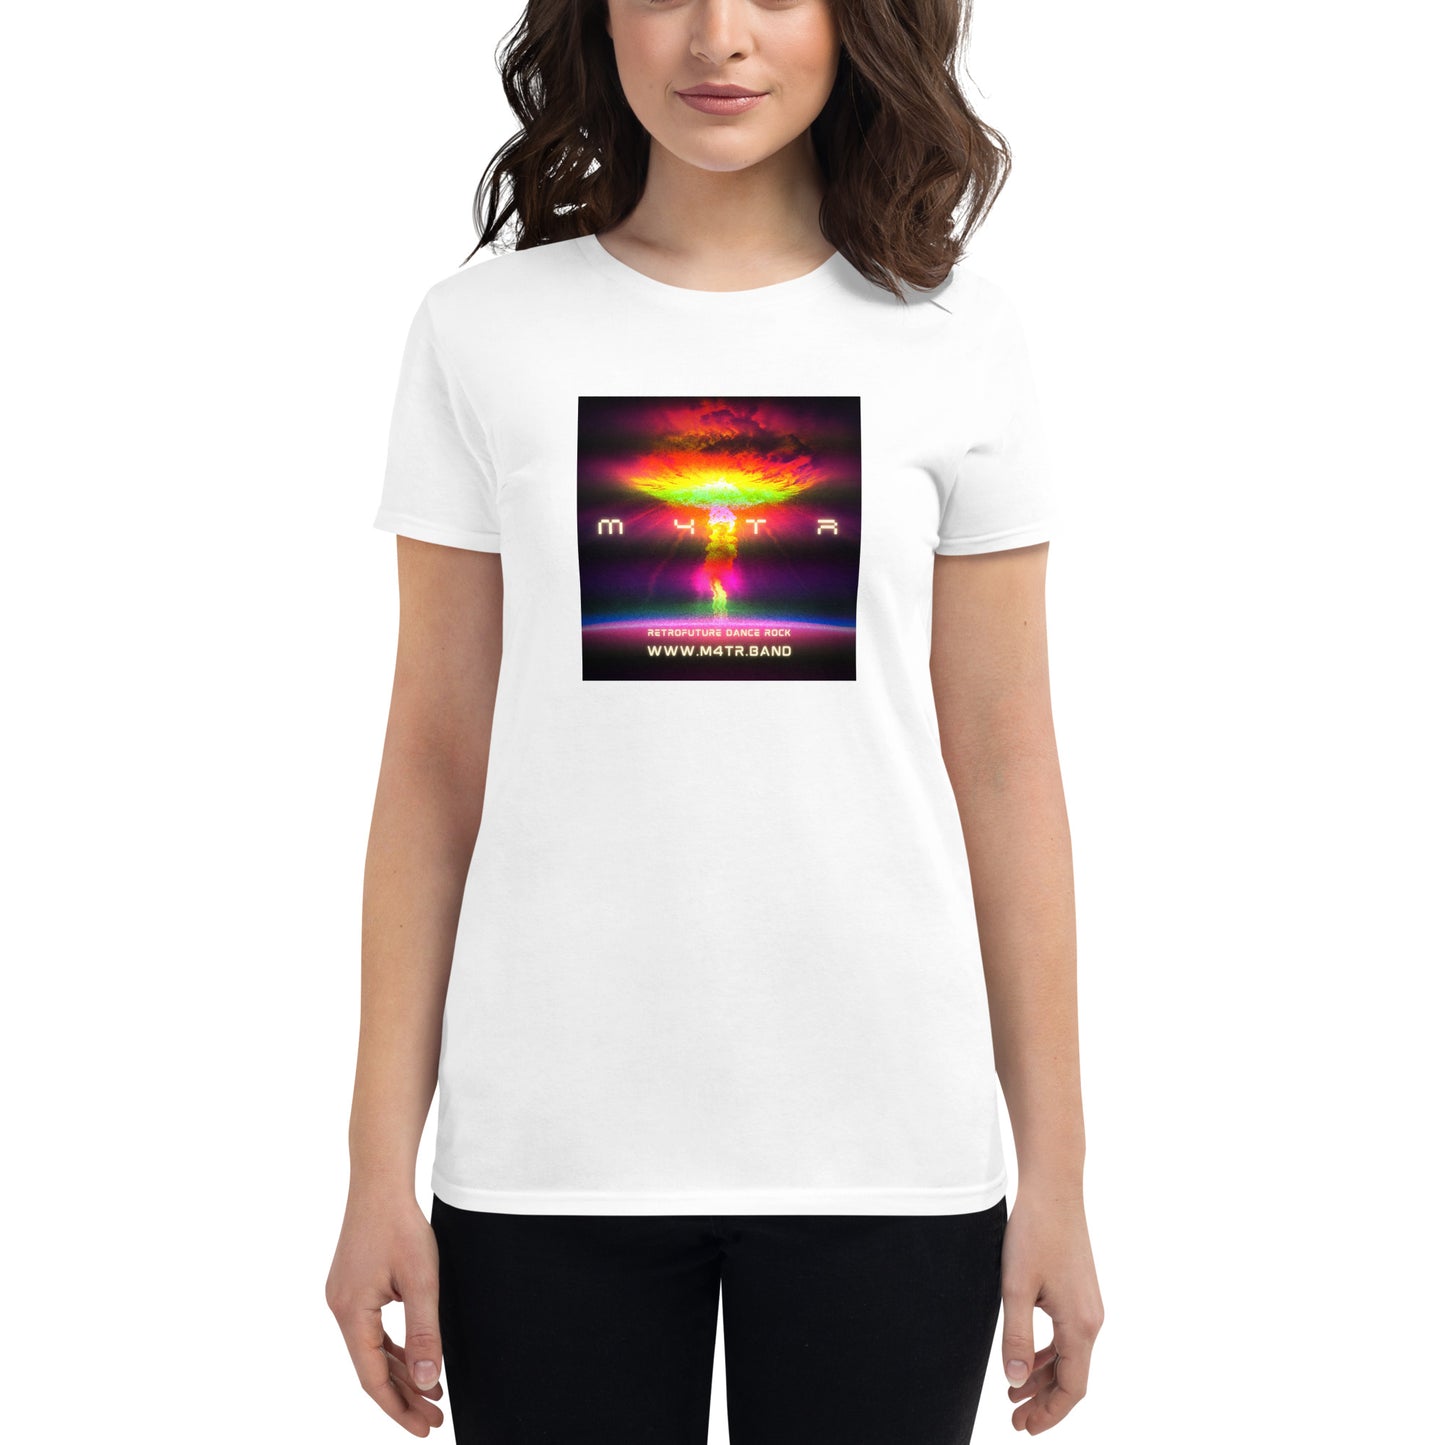 Women's short sleeve t-shirt (No Tomorrow Cloud)